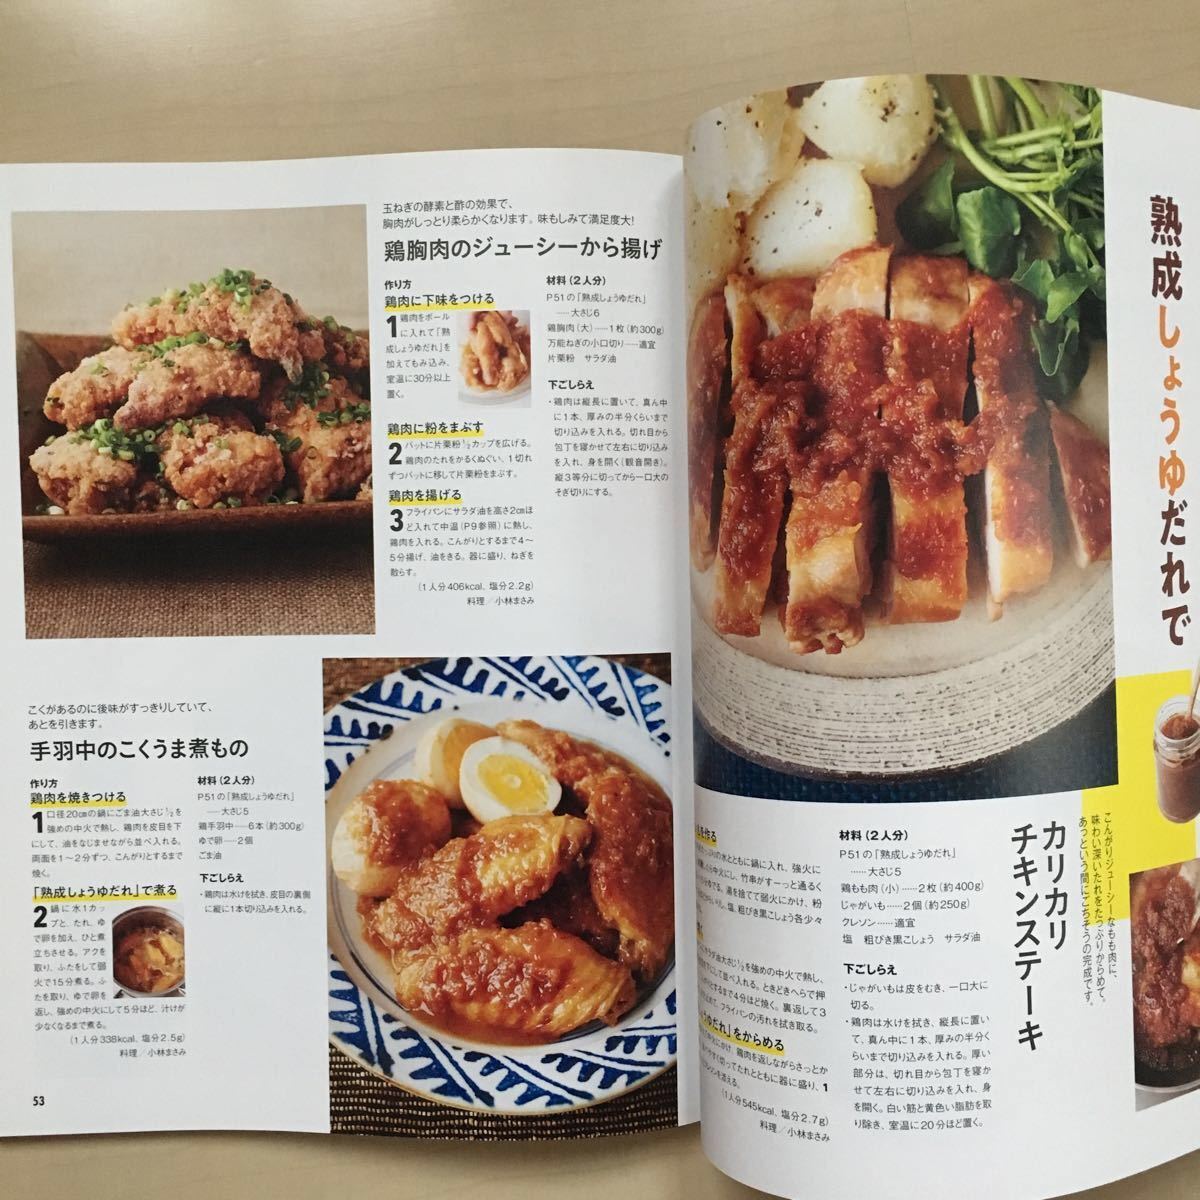 オレンジページレシピ&ひき肉レシピ2冊セット